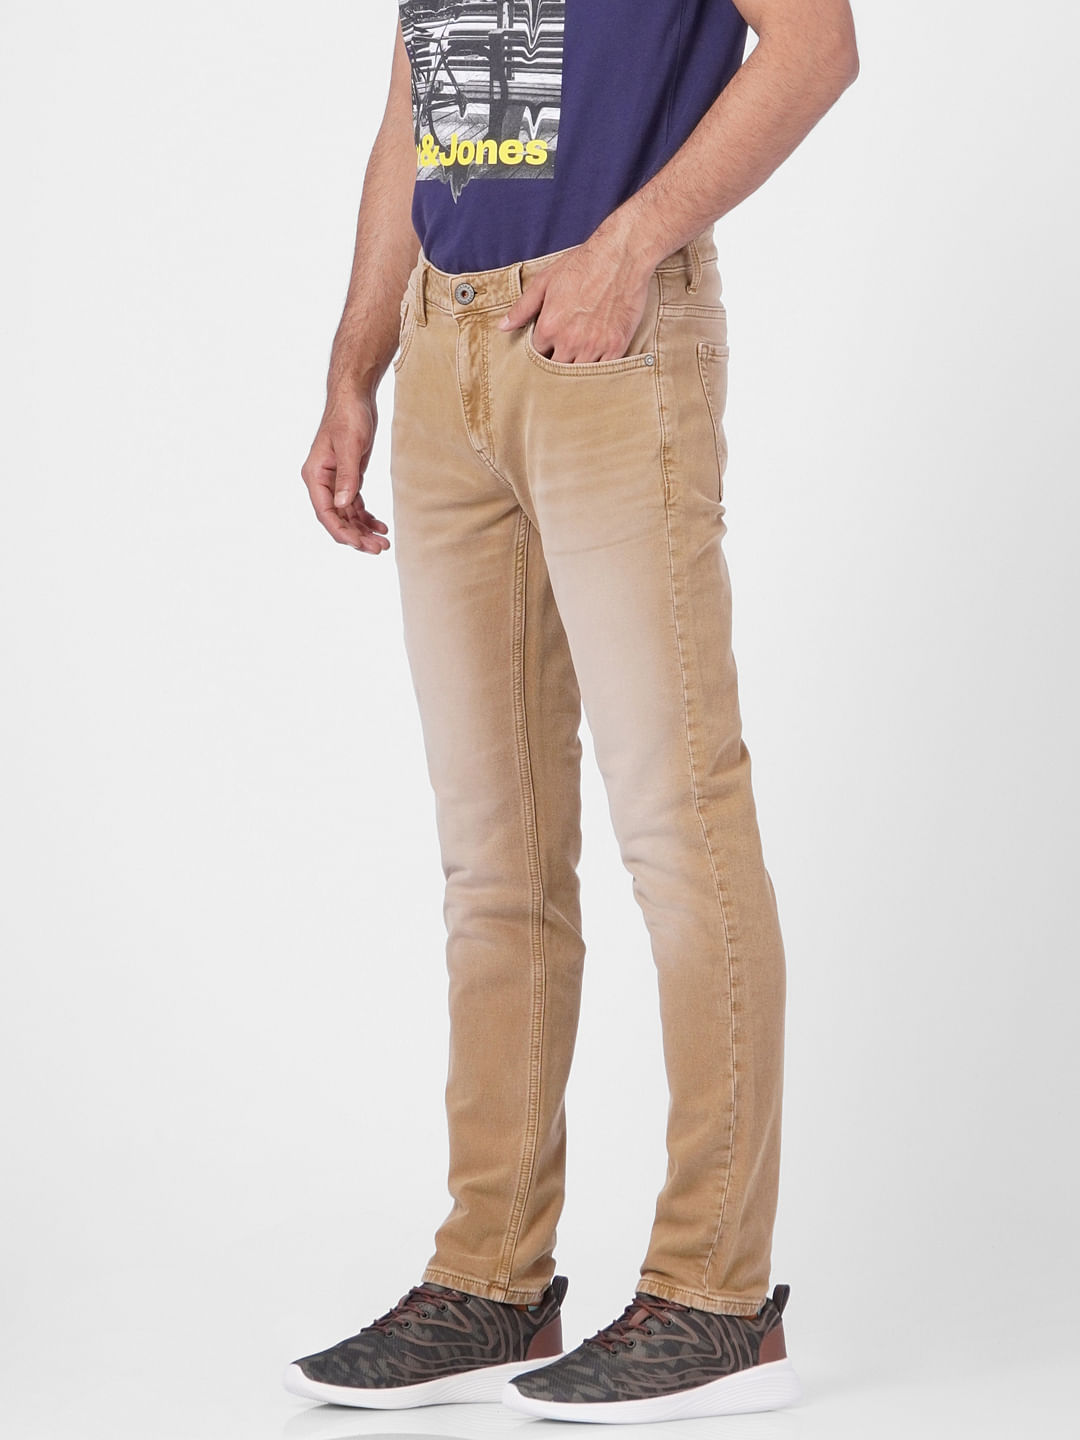 Buy Men Brown Dark Wash Low Skinny Fit Jeans Online  909171  Peter England